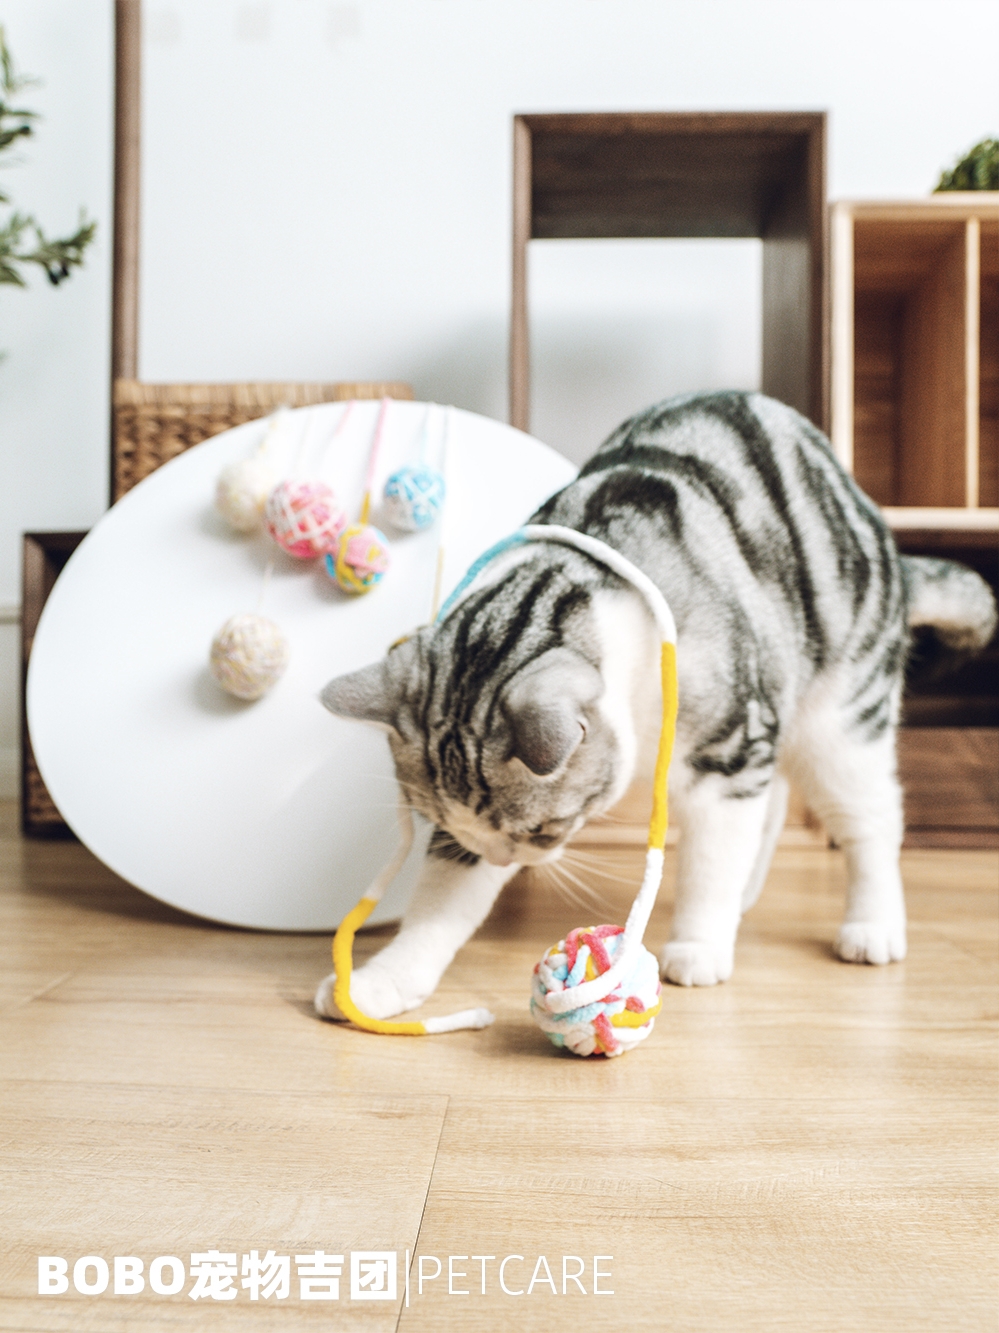 日本多格漫寵物貓玩具球鈴鐺球逗貓器逗貓棒貓抓板貓咪毛線球玩具